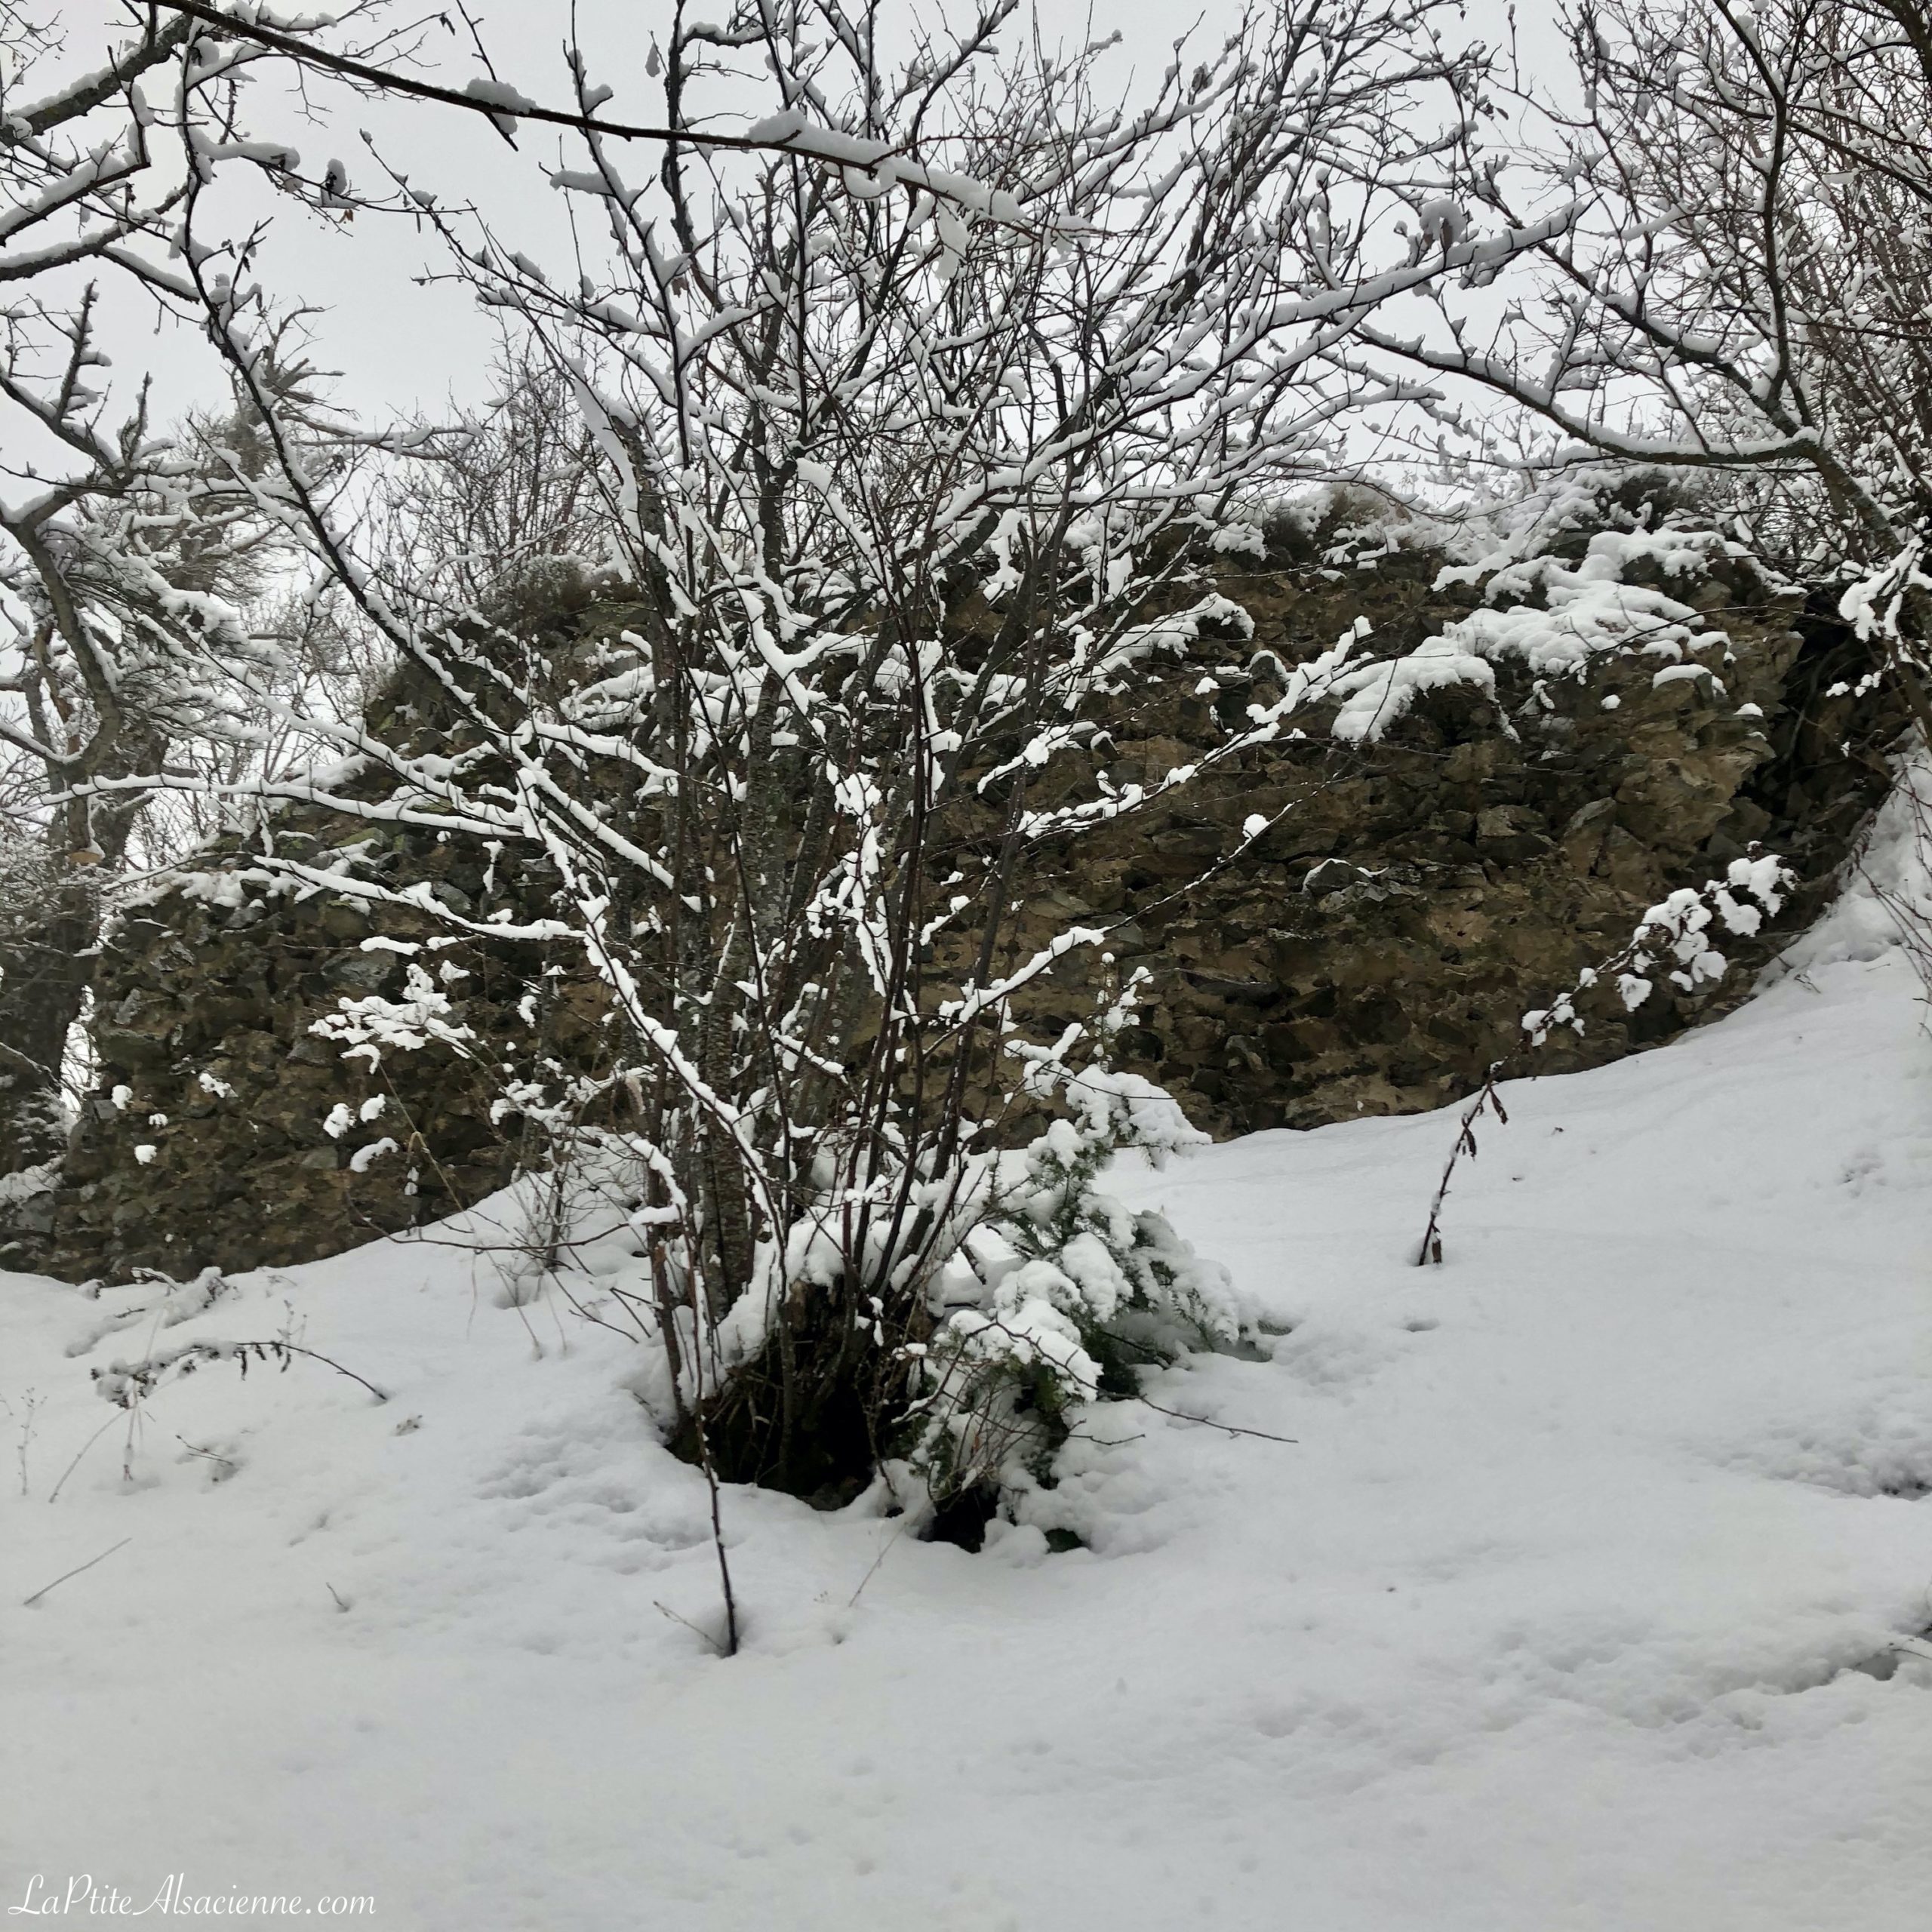 Ruine du Hohrupf sous la neige - Photo de LaPtiteAlsacienne pour l'article sur les châteaux forts en alsace